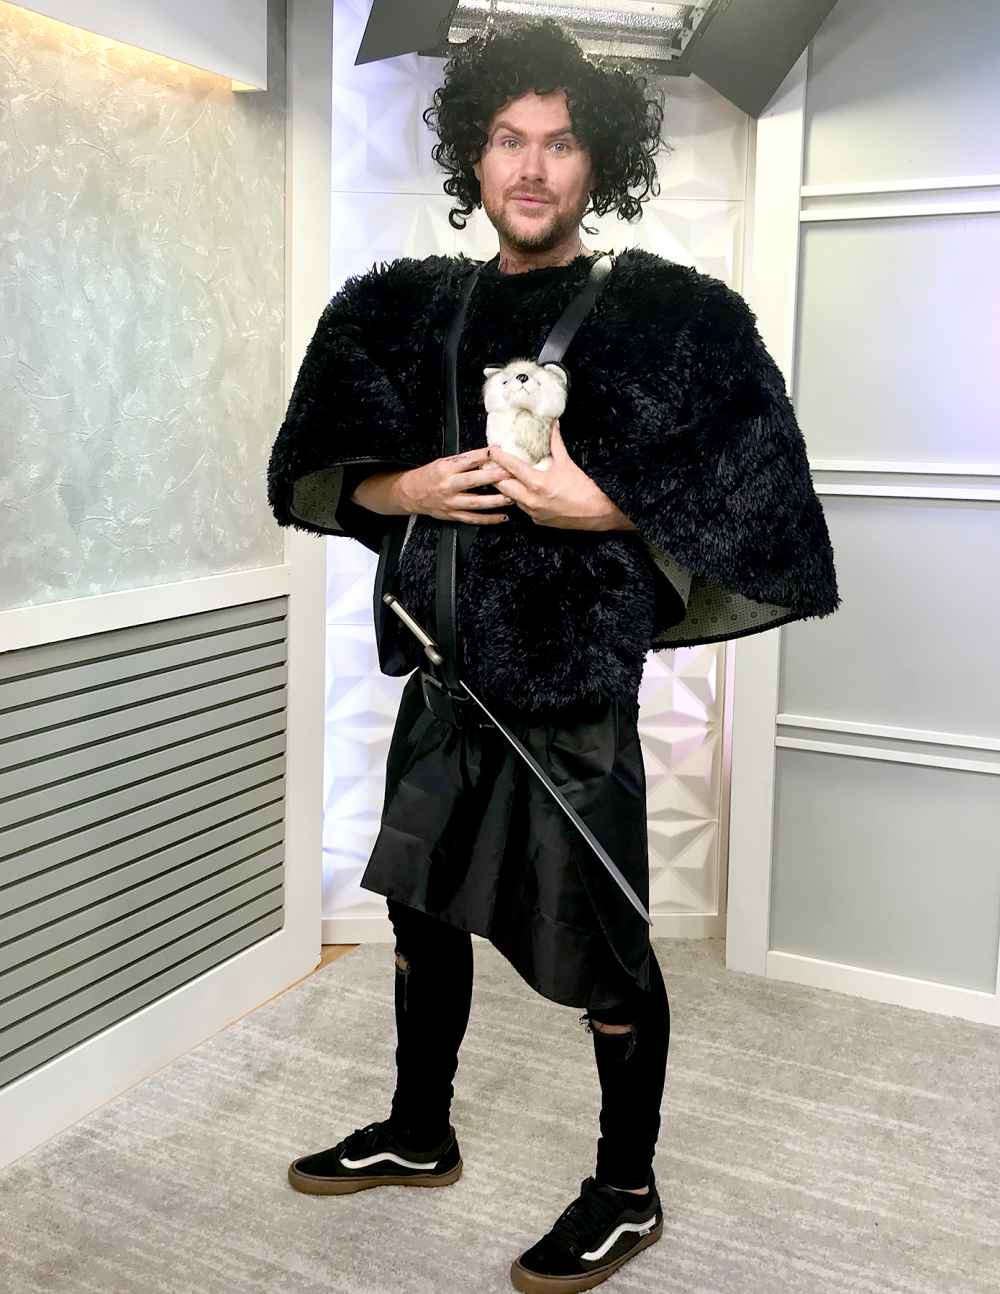 Jon Snow Halloween costume